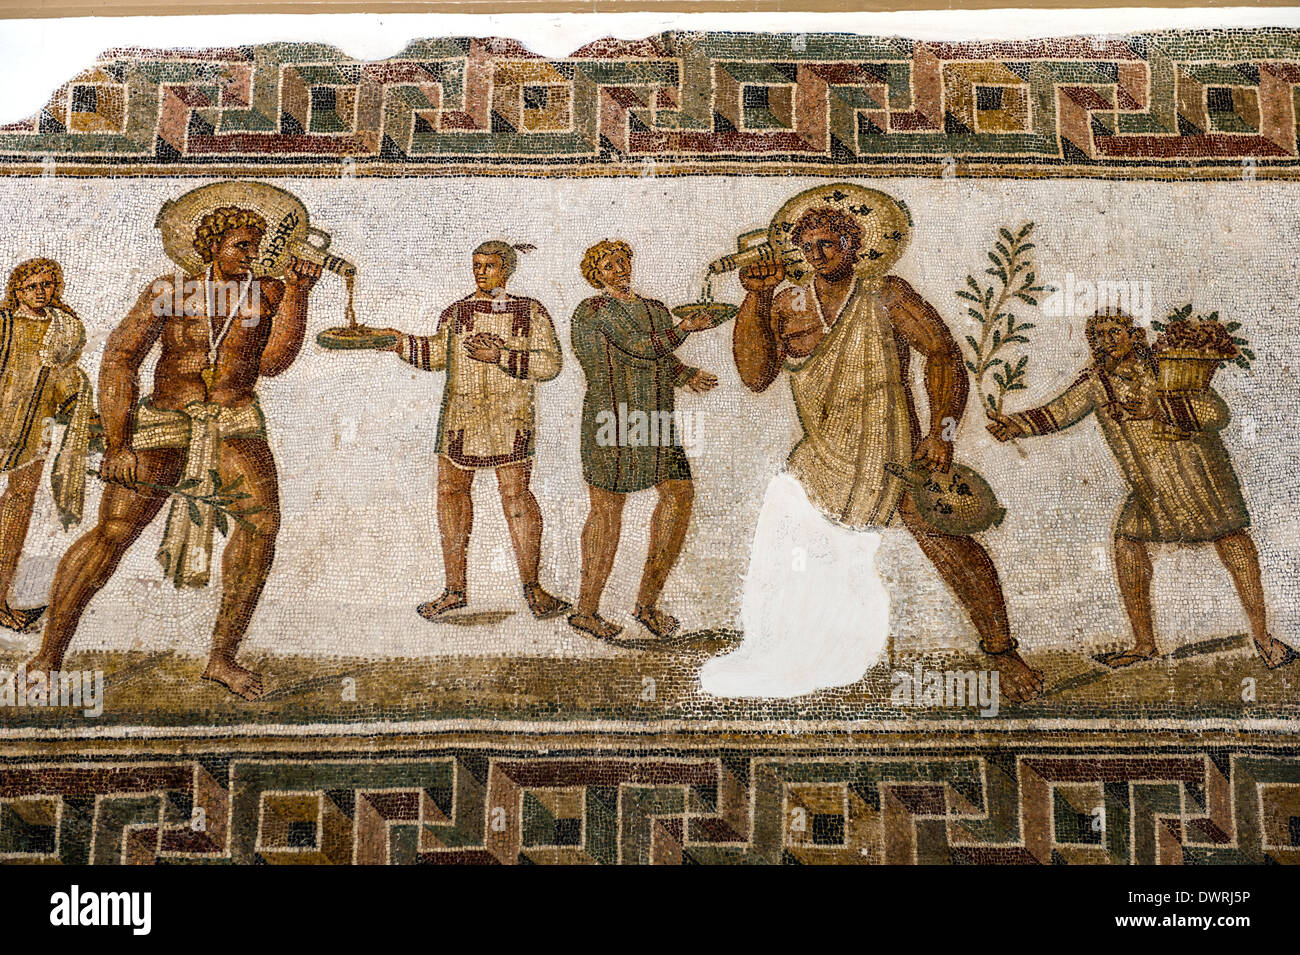 L'Afrique, Tunisie, Tunis, le Musée du Bardo, fresque romaine mosaïque. Allégorie du vin. Fragment. Banque D'Images